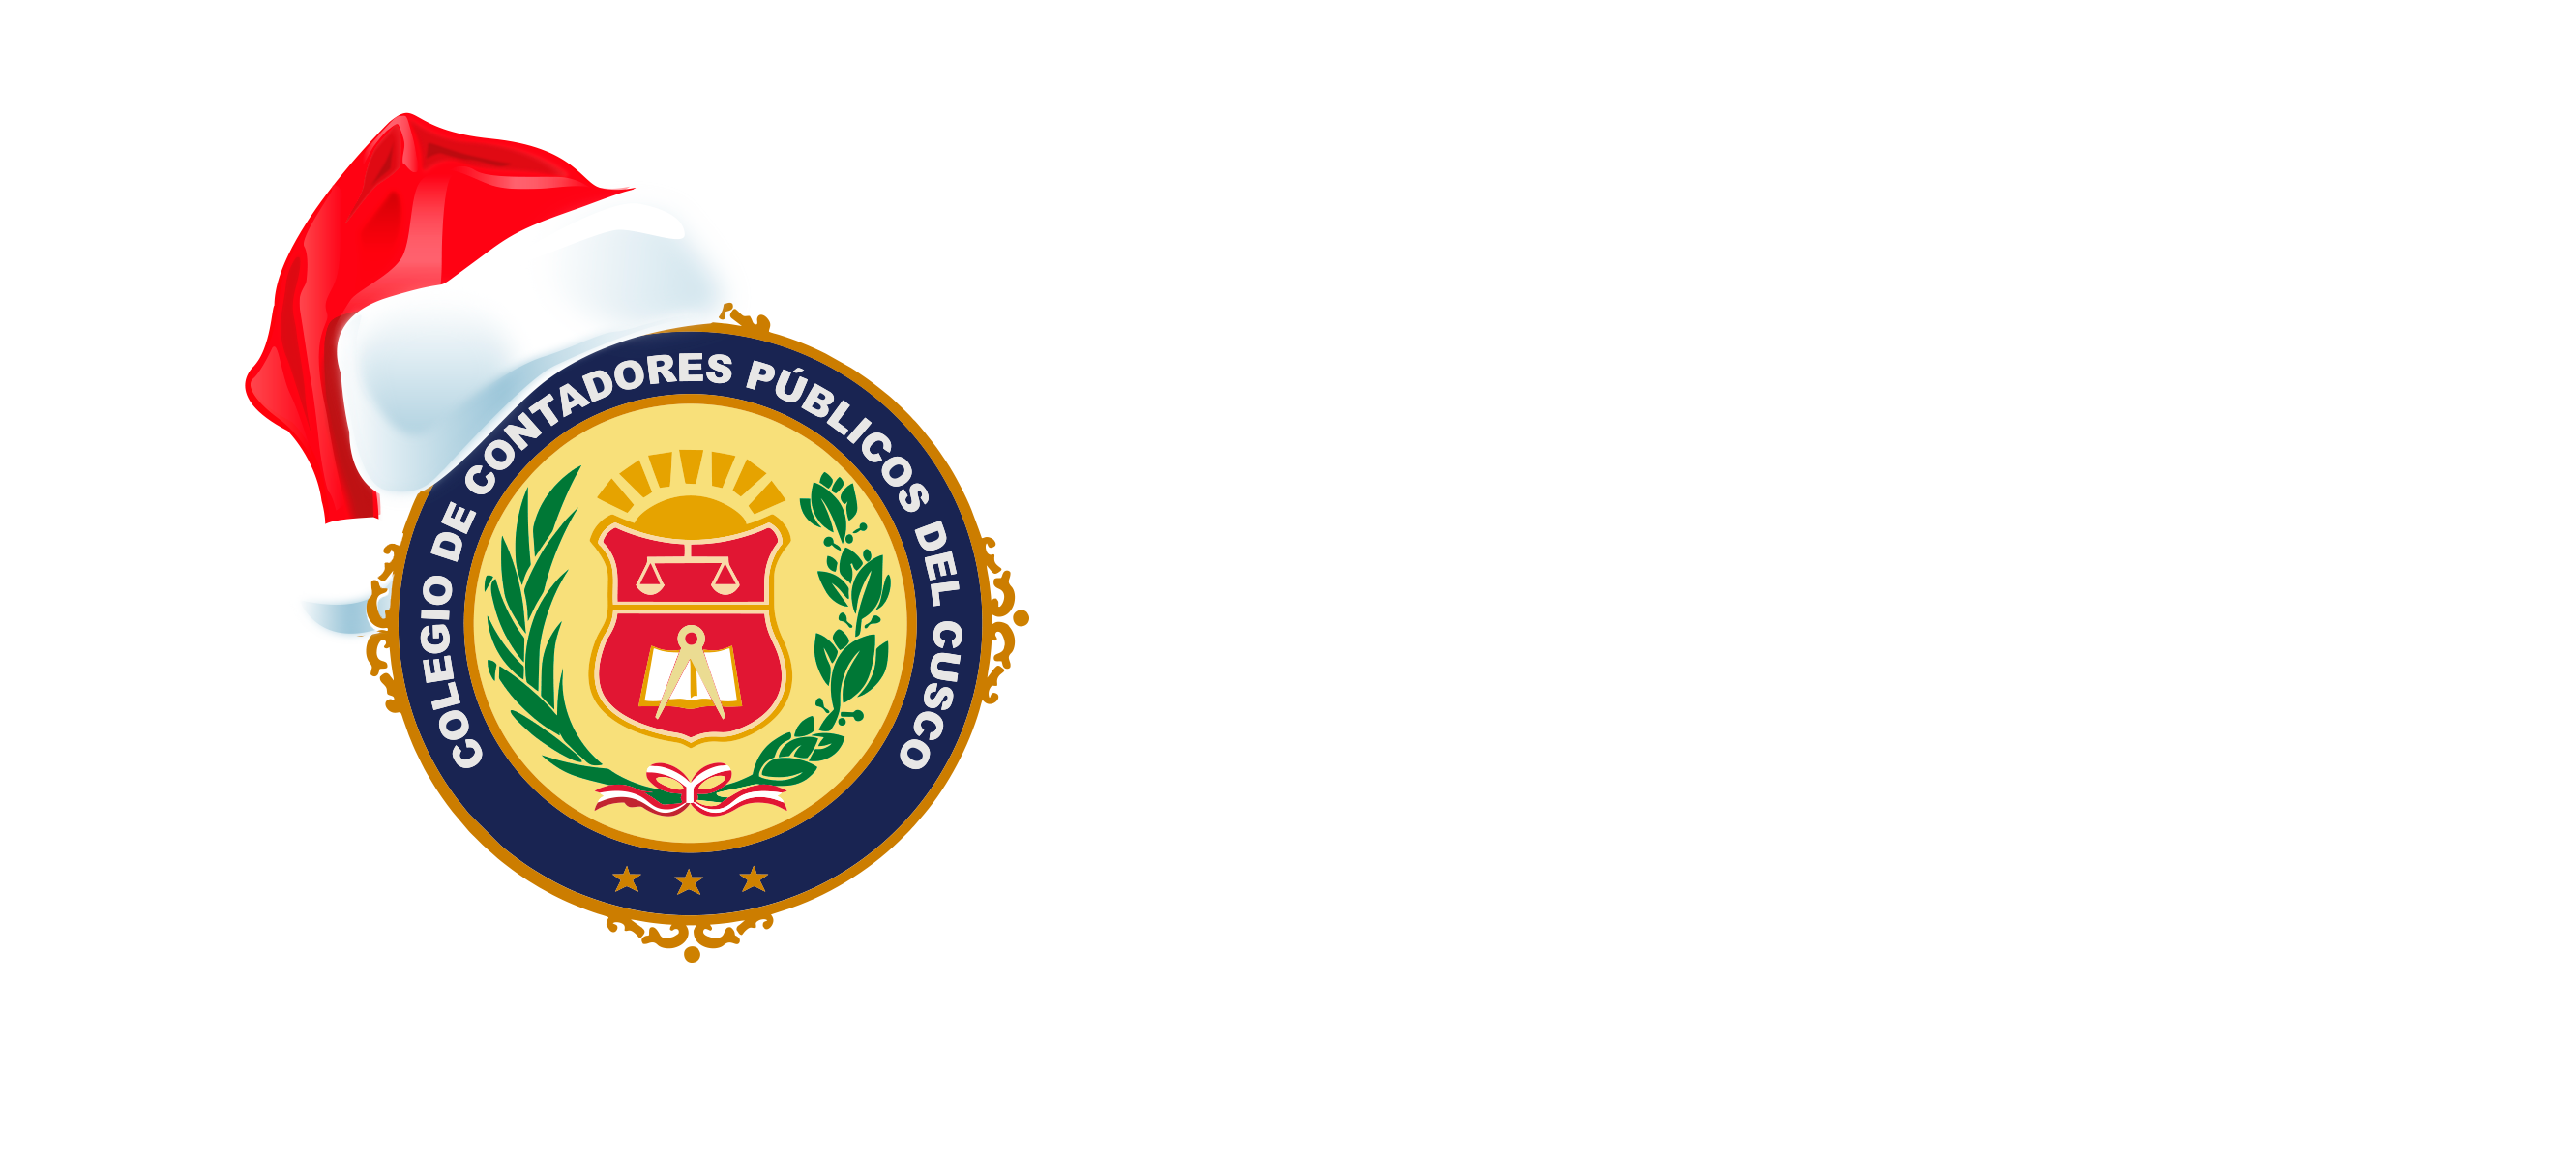 Colegio de Contadores Publicos – Cusco